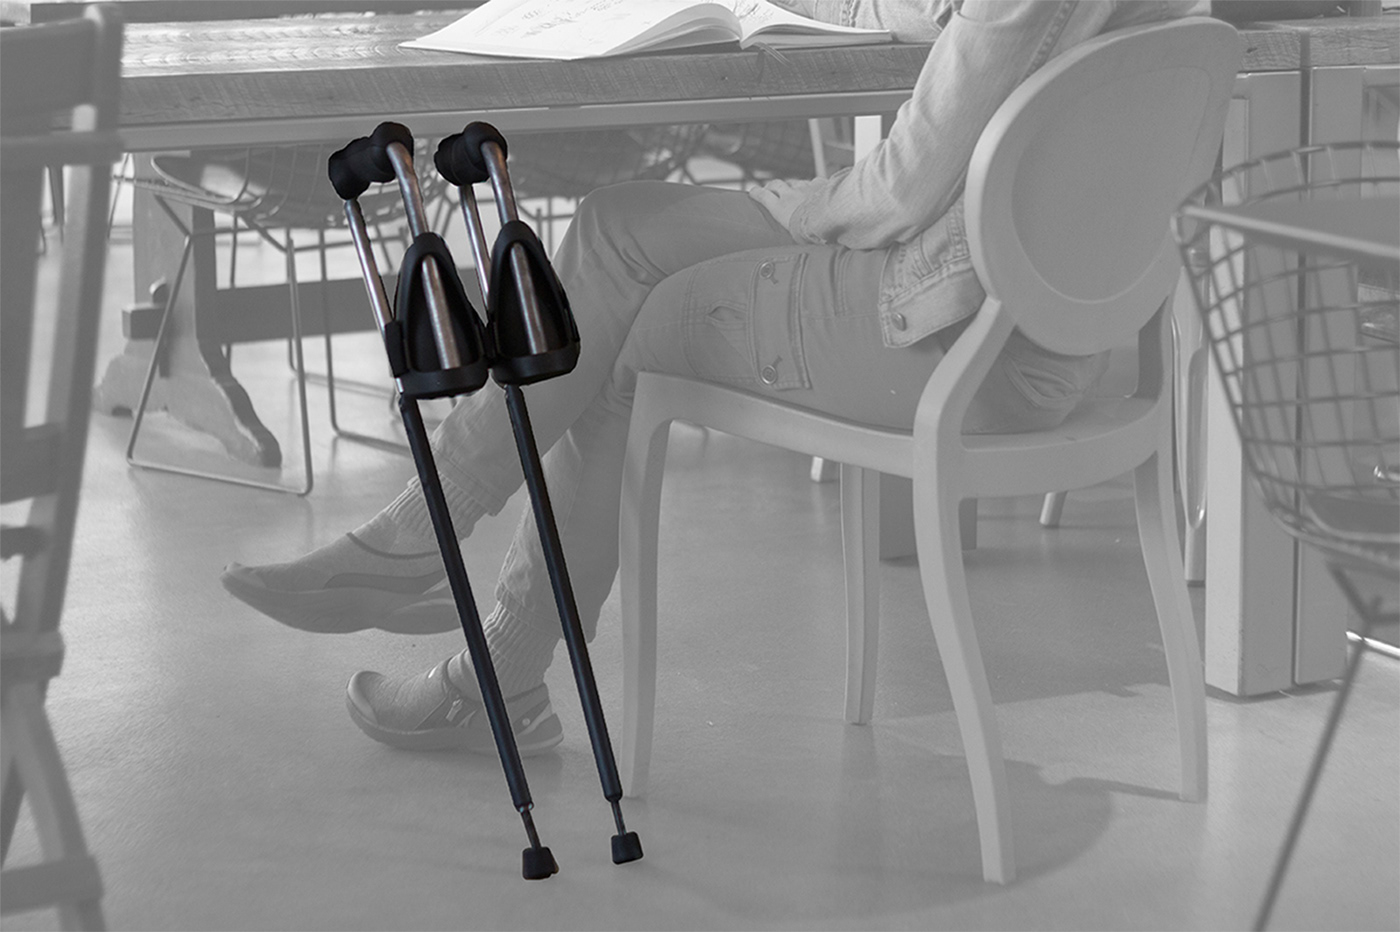 crutch crutches MIT risd pdd therapy Health